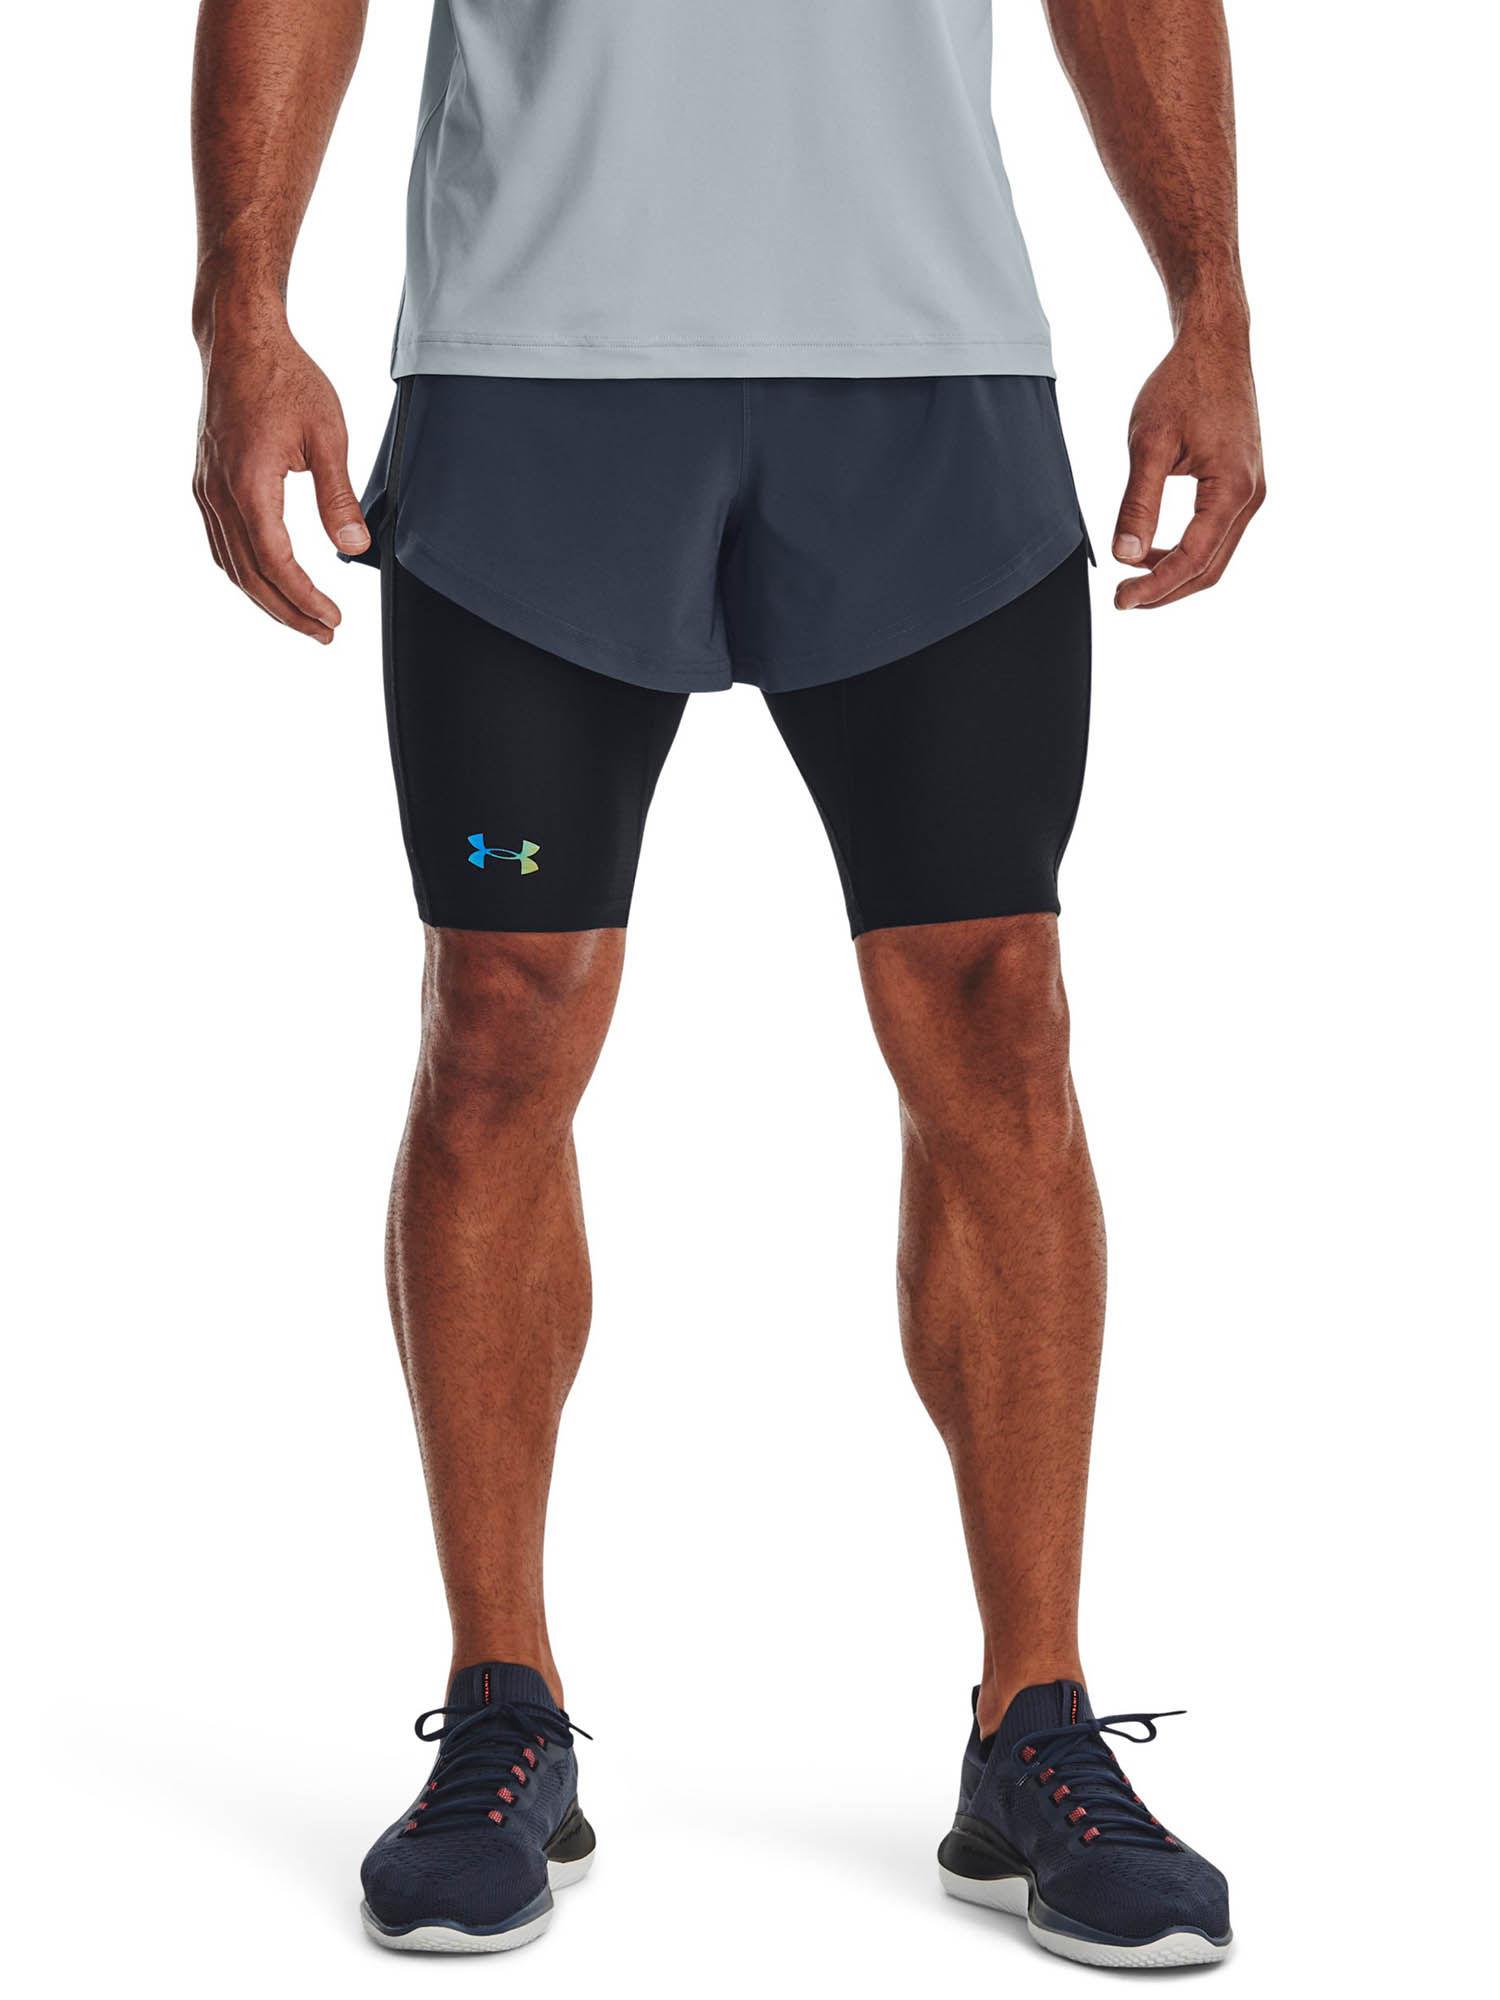 smartform rush shorts